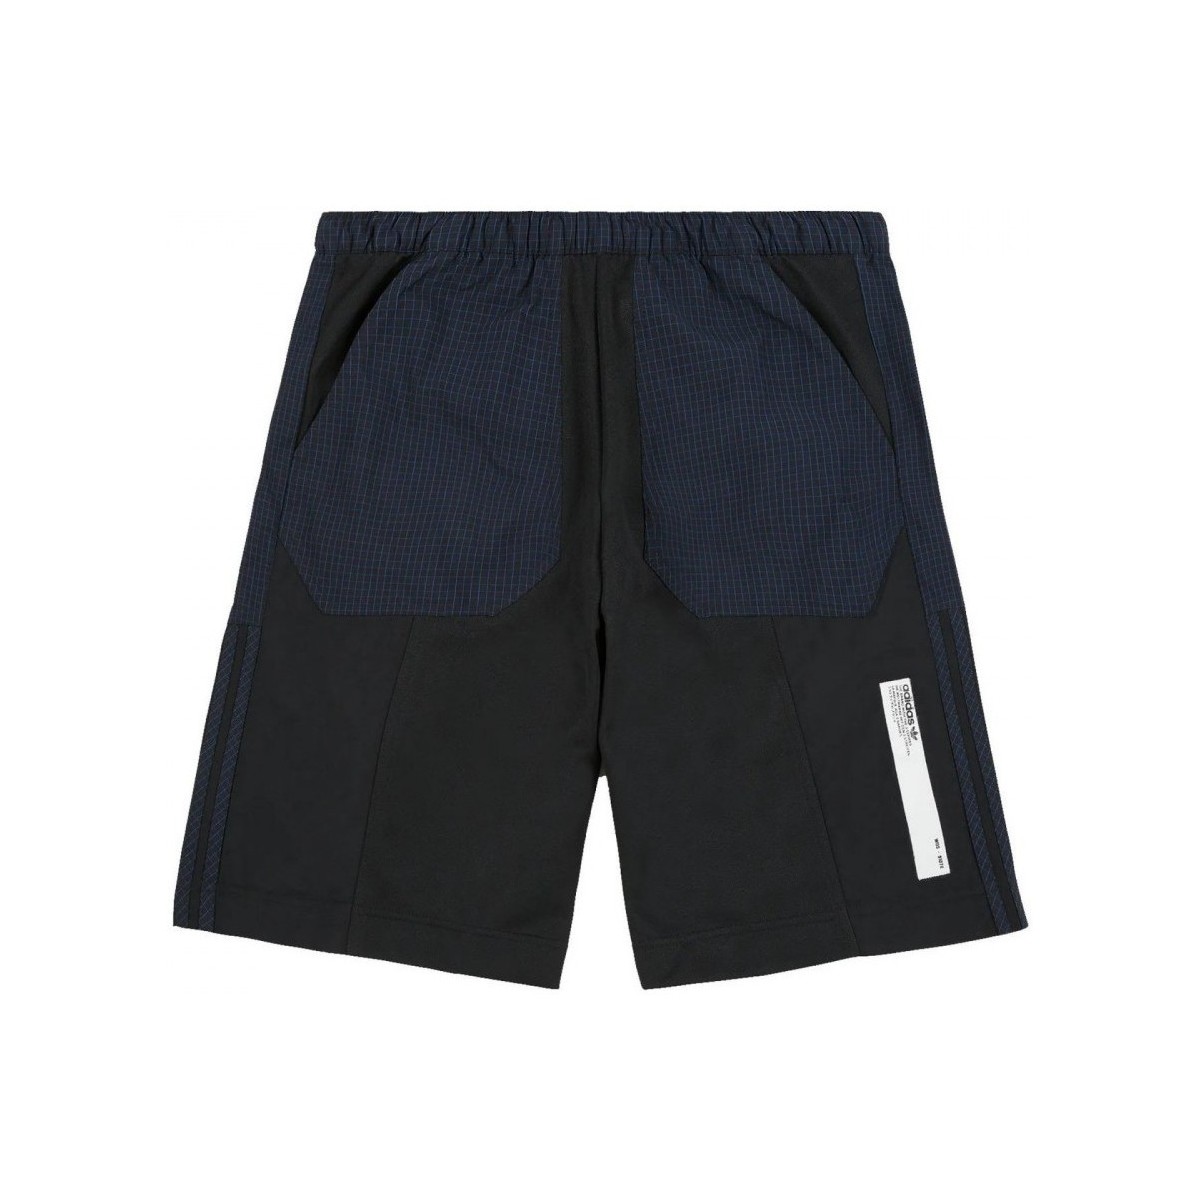 Textiel Heren Korte broeken / Bermuda's adidas Originals Nmd Short Zwart